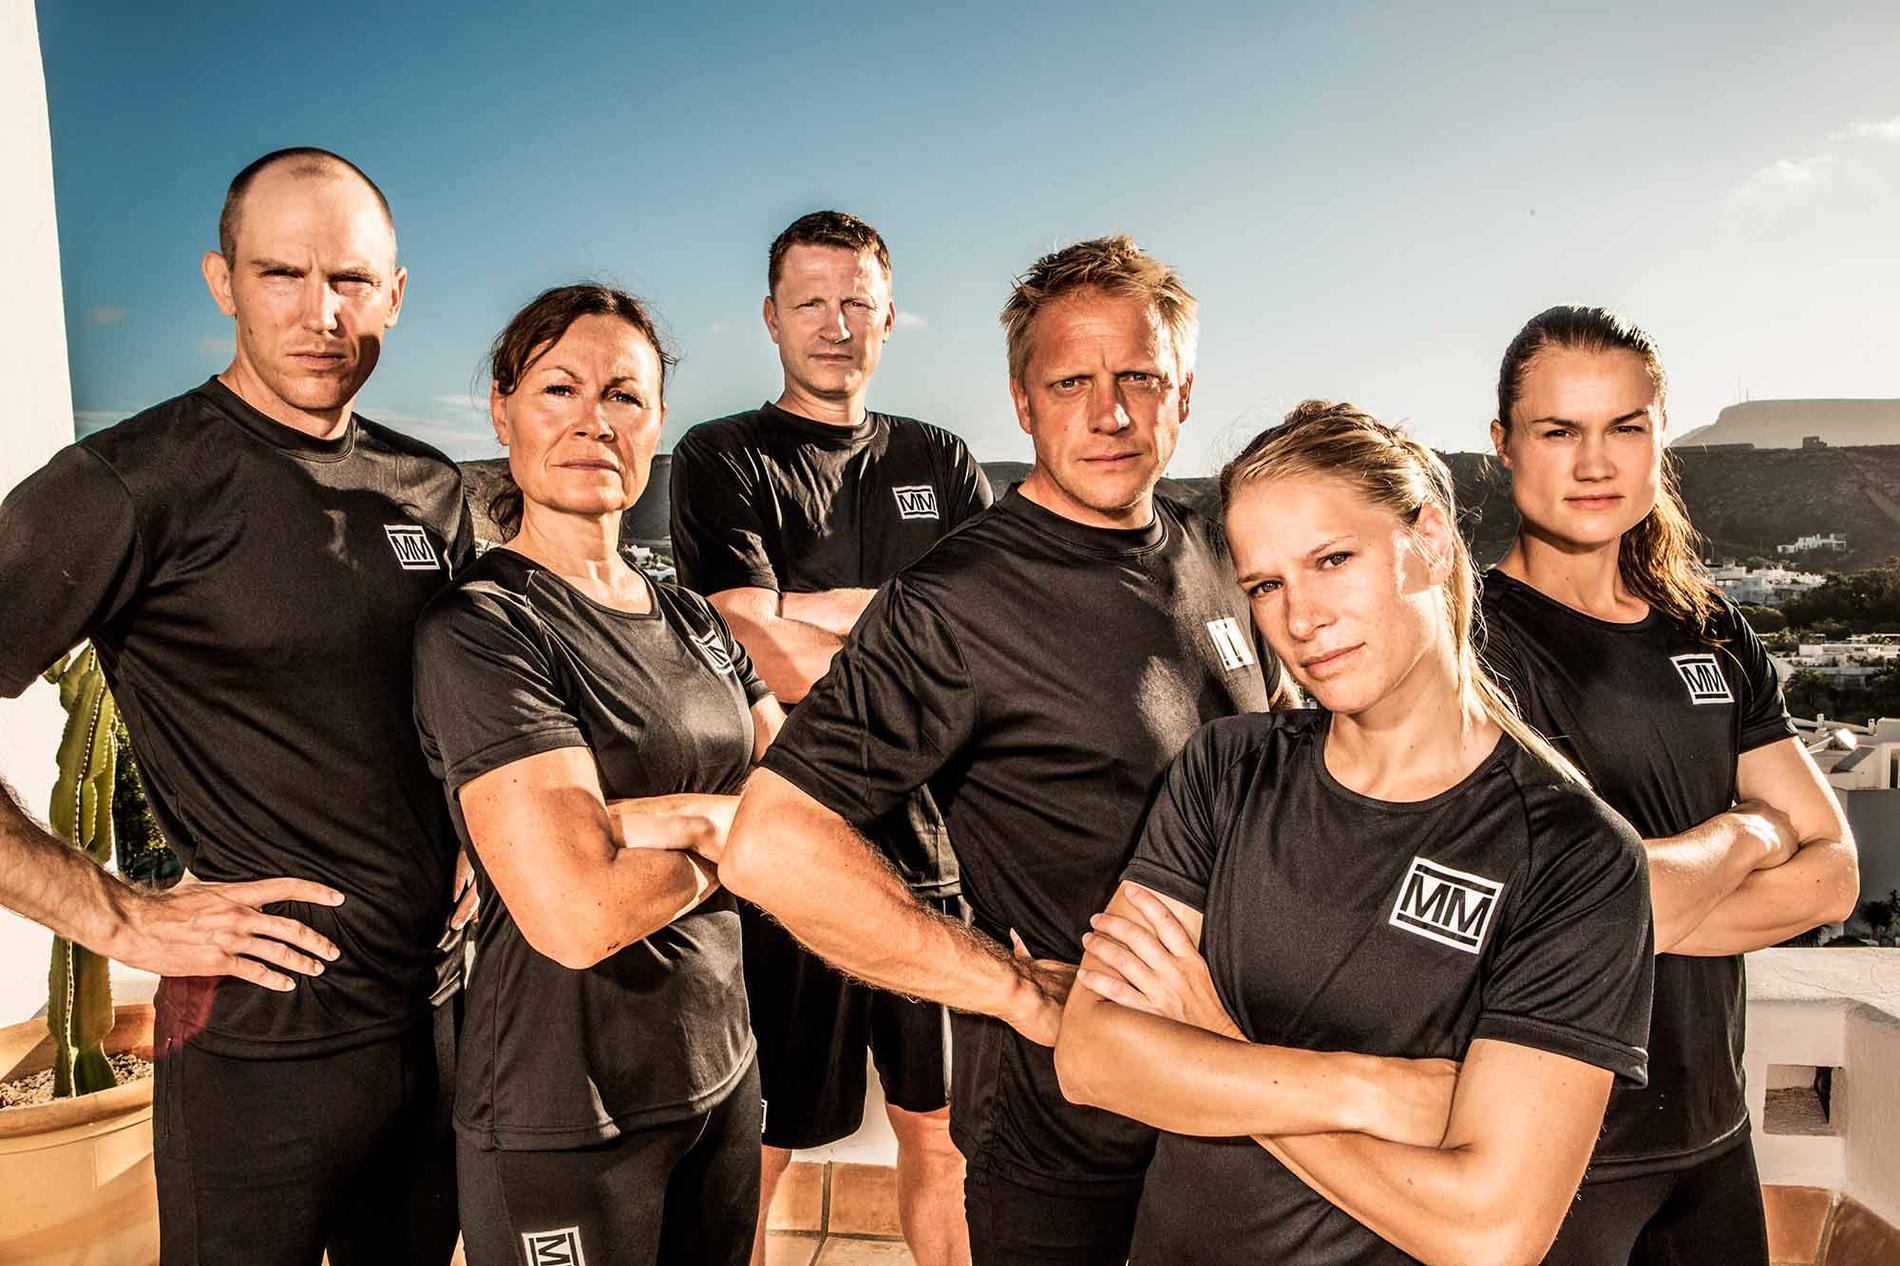 Grupp 2 består av Björn Ferry, Kicki Johansson, Kenneth Andersson, Anders Eriksson, Inez Karlsson och Heidi Andersson.